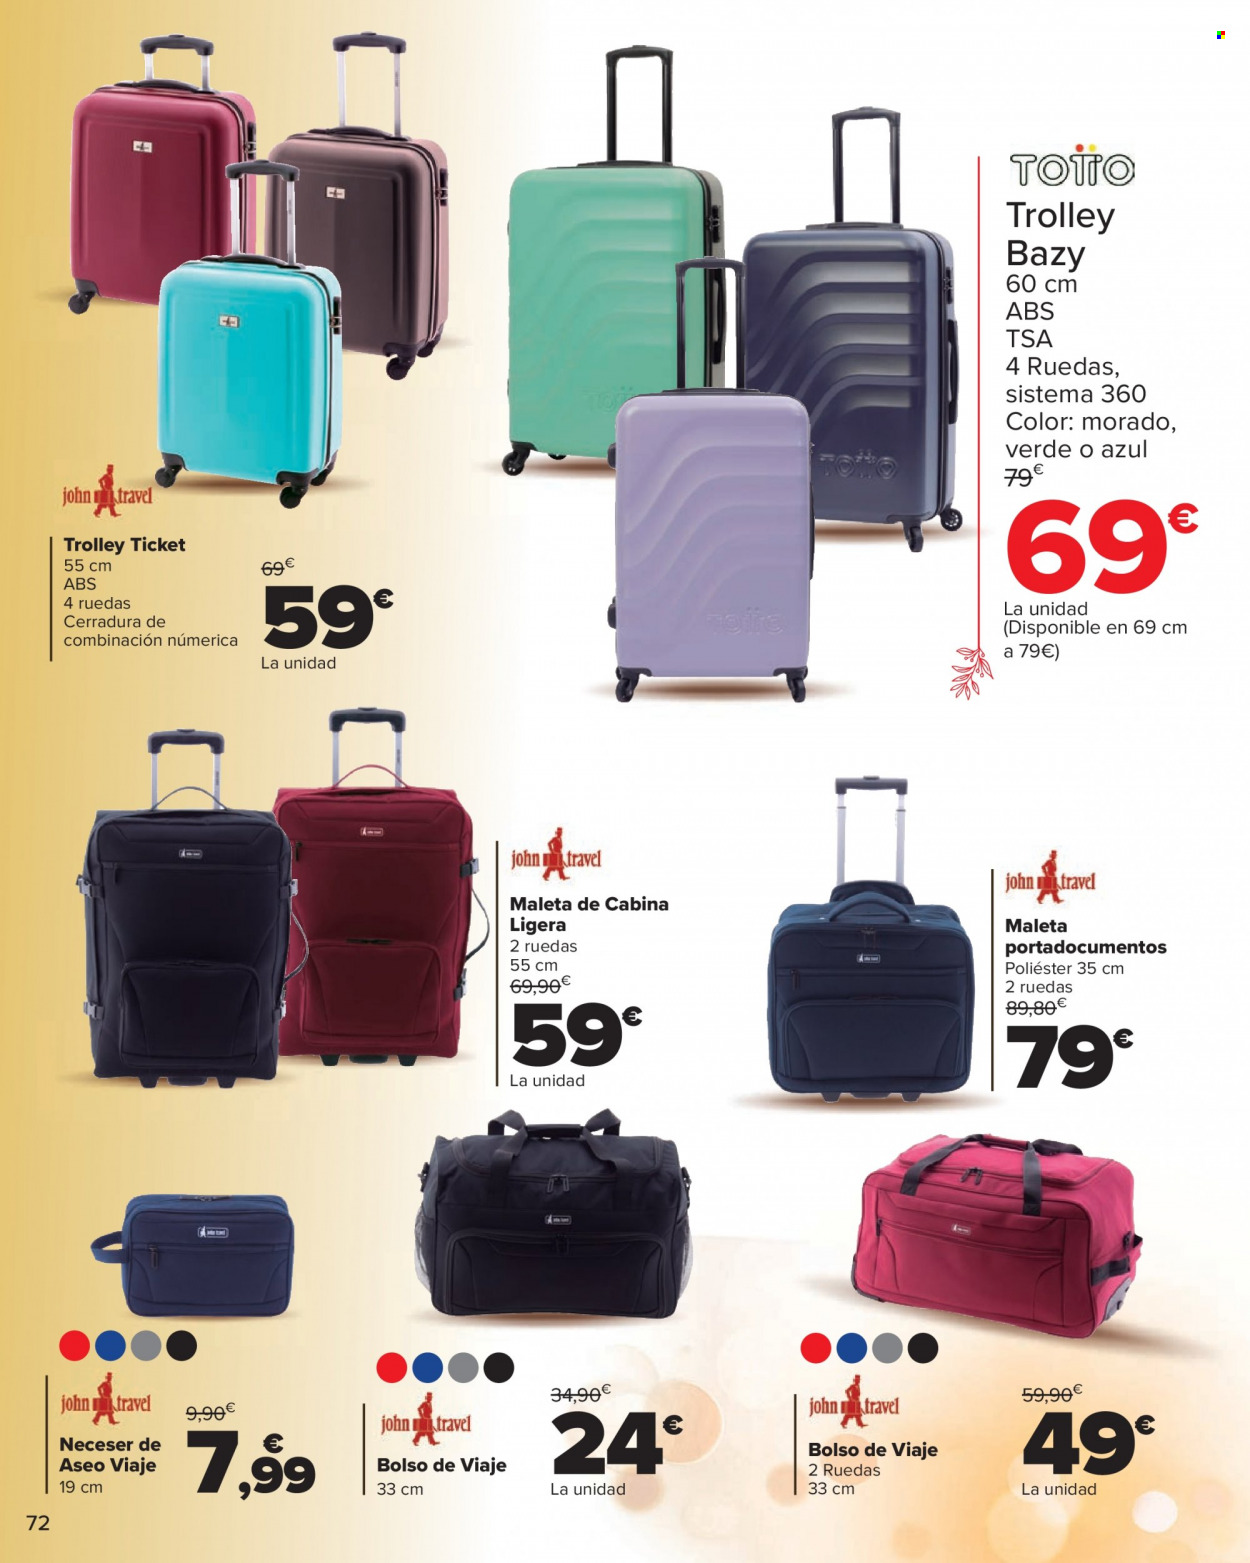 thumbnail - Folleto actual Carrefour - 01/12/22 - 08/01/23 - Ventas - maleta, trolley, bolso, bolso de viaje, neceser. Página 72.